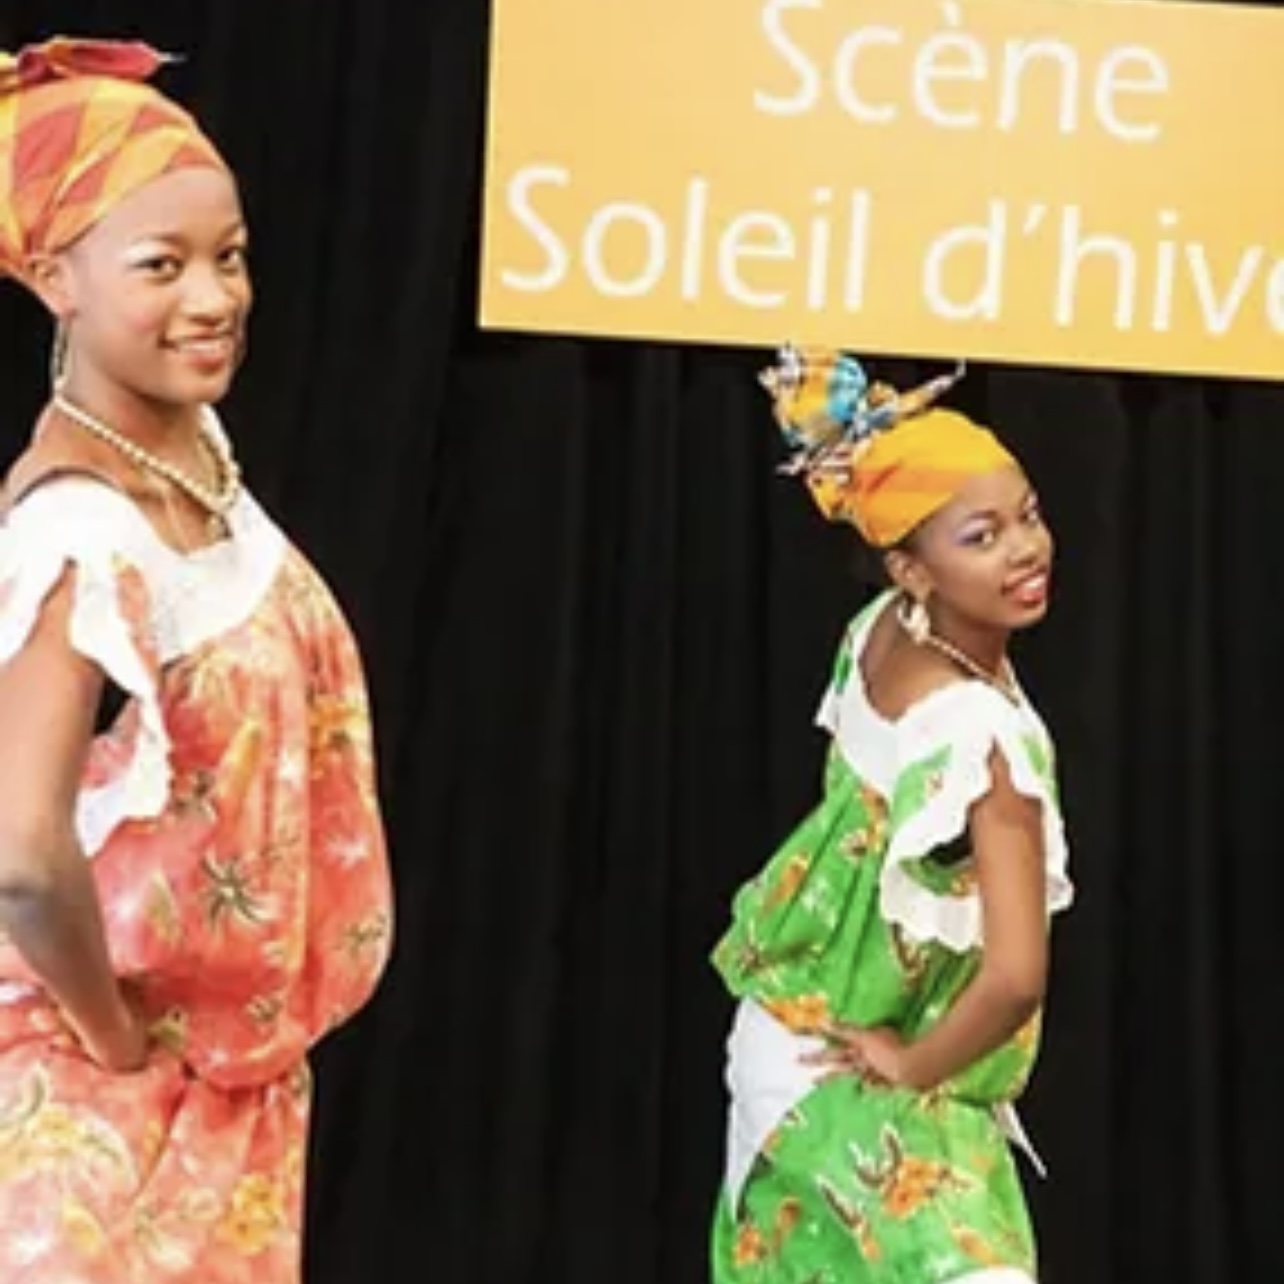 Description : Deux femmes africaines vêtues de vêtements colorés se tiennent devant une pancarte annonçant Vogages Soleil.